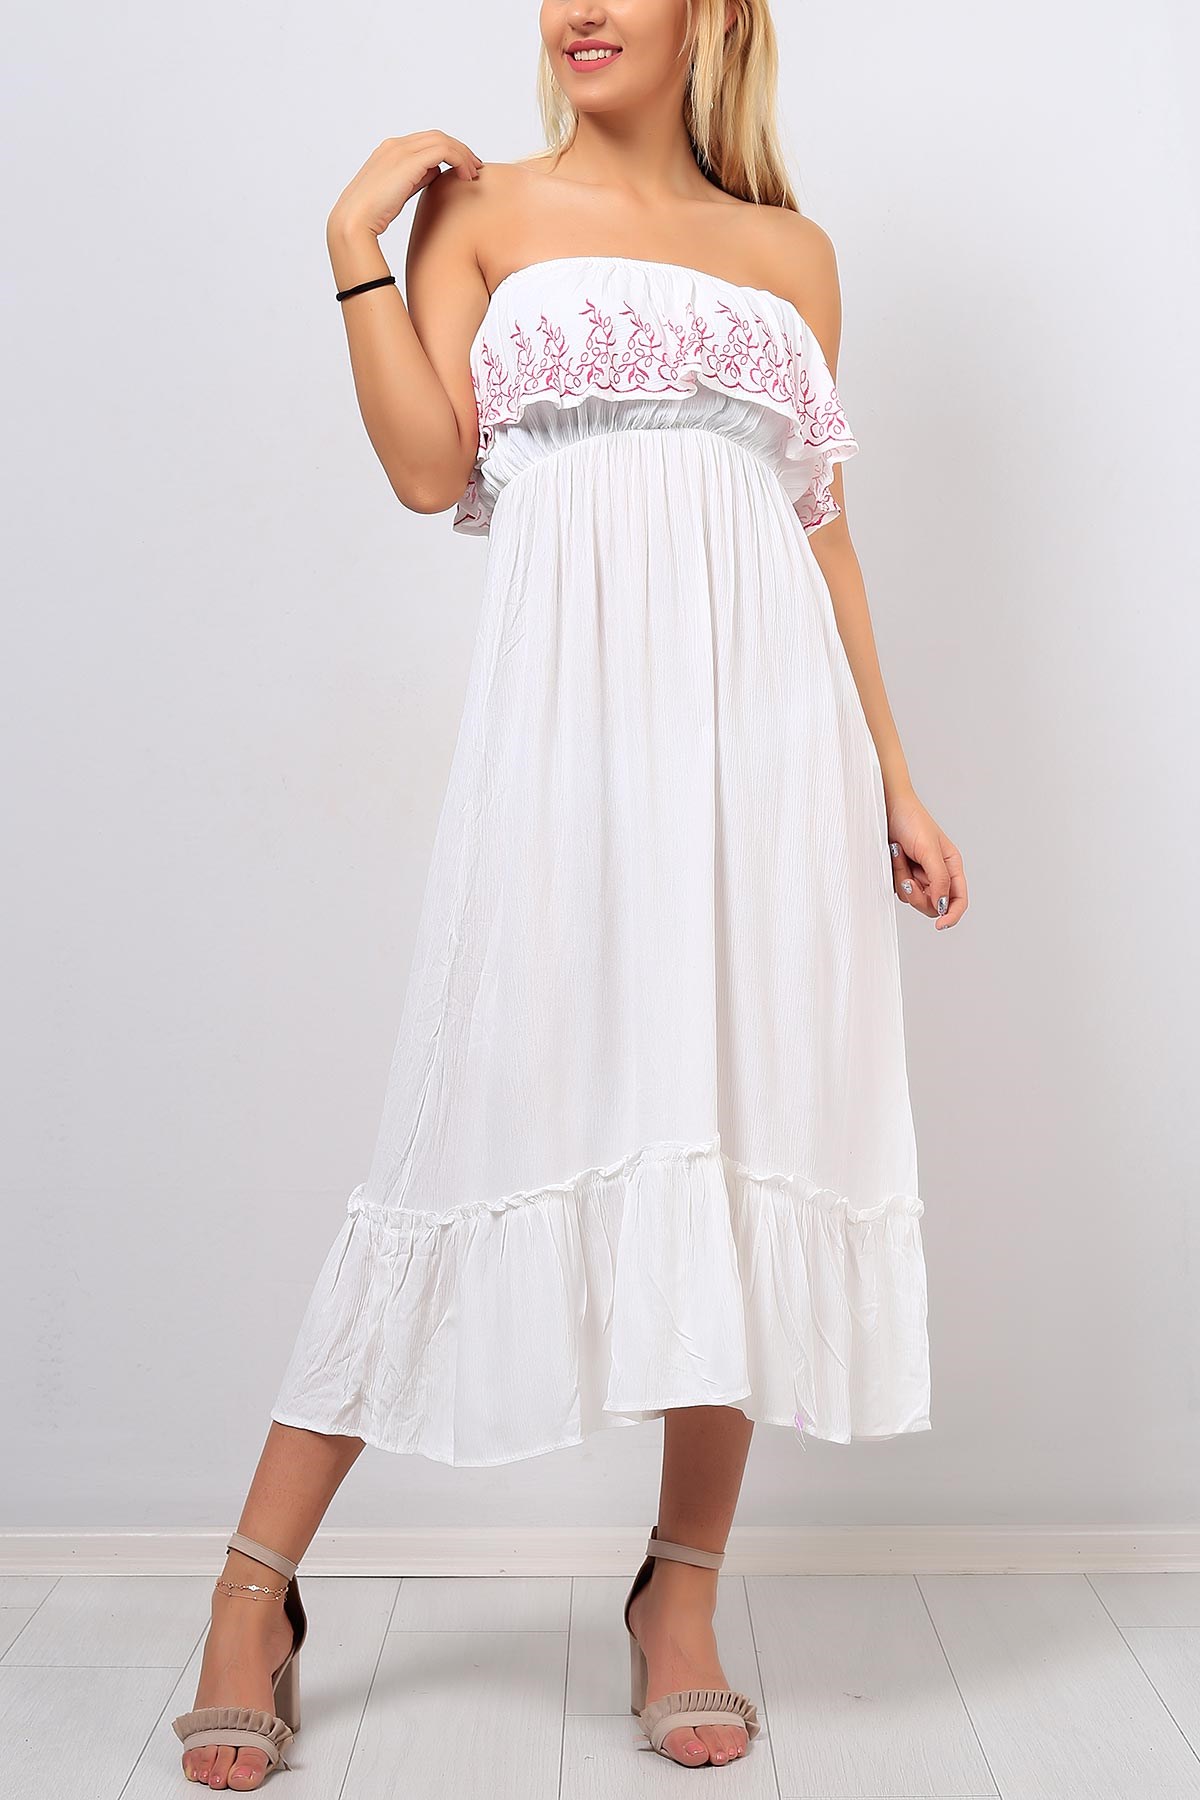 Kayık Yaka Desenli Beyaz Bayan Elbise 8402B